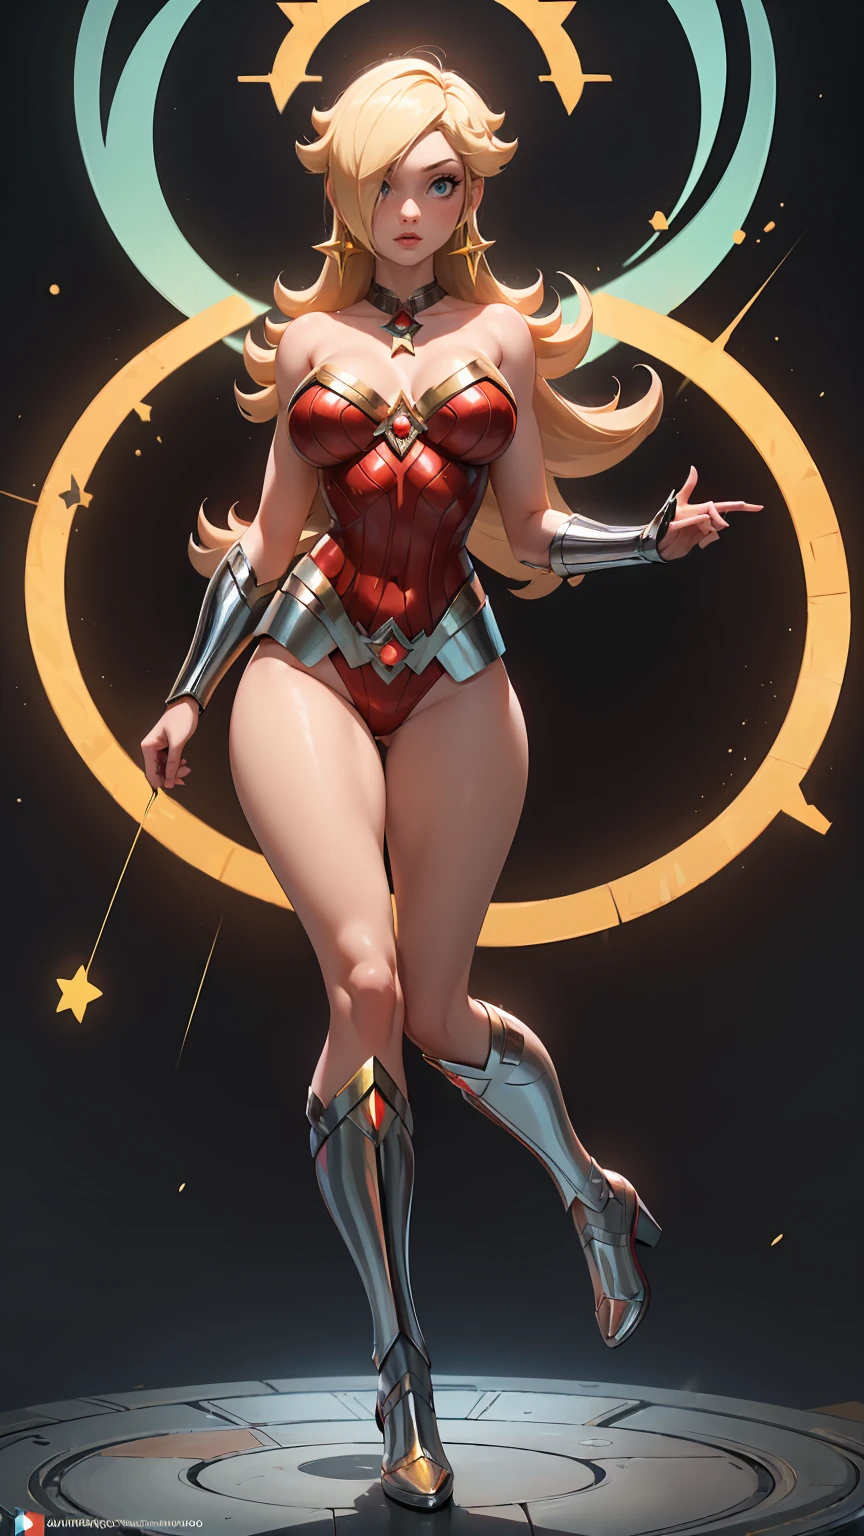 (beste Qualität). (ultradetailliert). (1 Mädchen), Blick auf den Betrachter. (Detaillierter Hintergrund). schöne detaillierte Augen. zartes und schönes Gesicht. (hohe Sättigung), vollbusig, hängende Brüste, sexy Wonder Woman Kostüm, Ganzkörper, Lange Beine, Große Brüste,